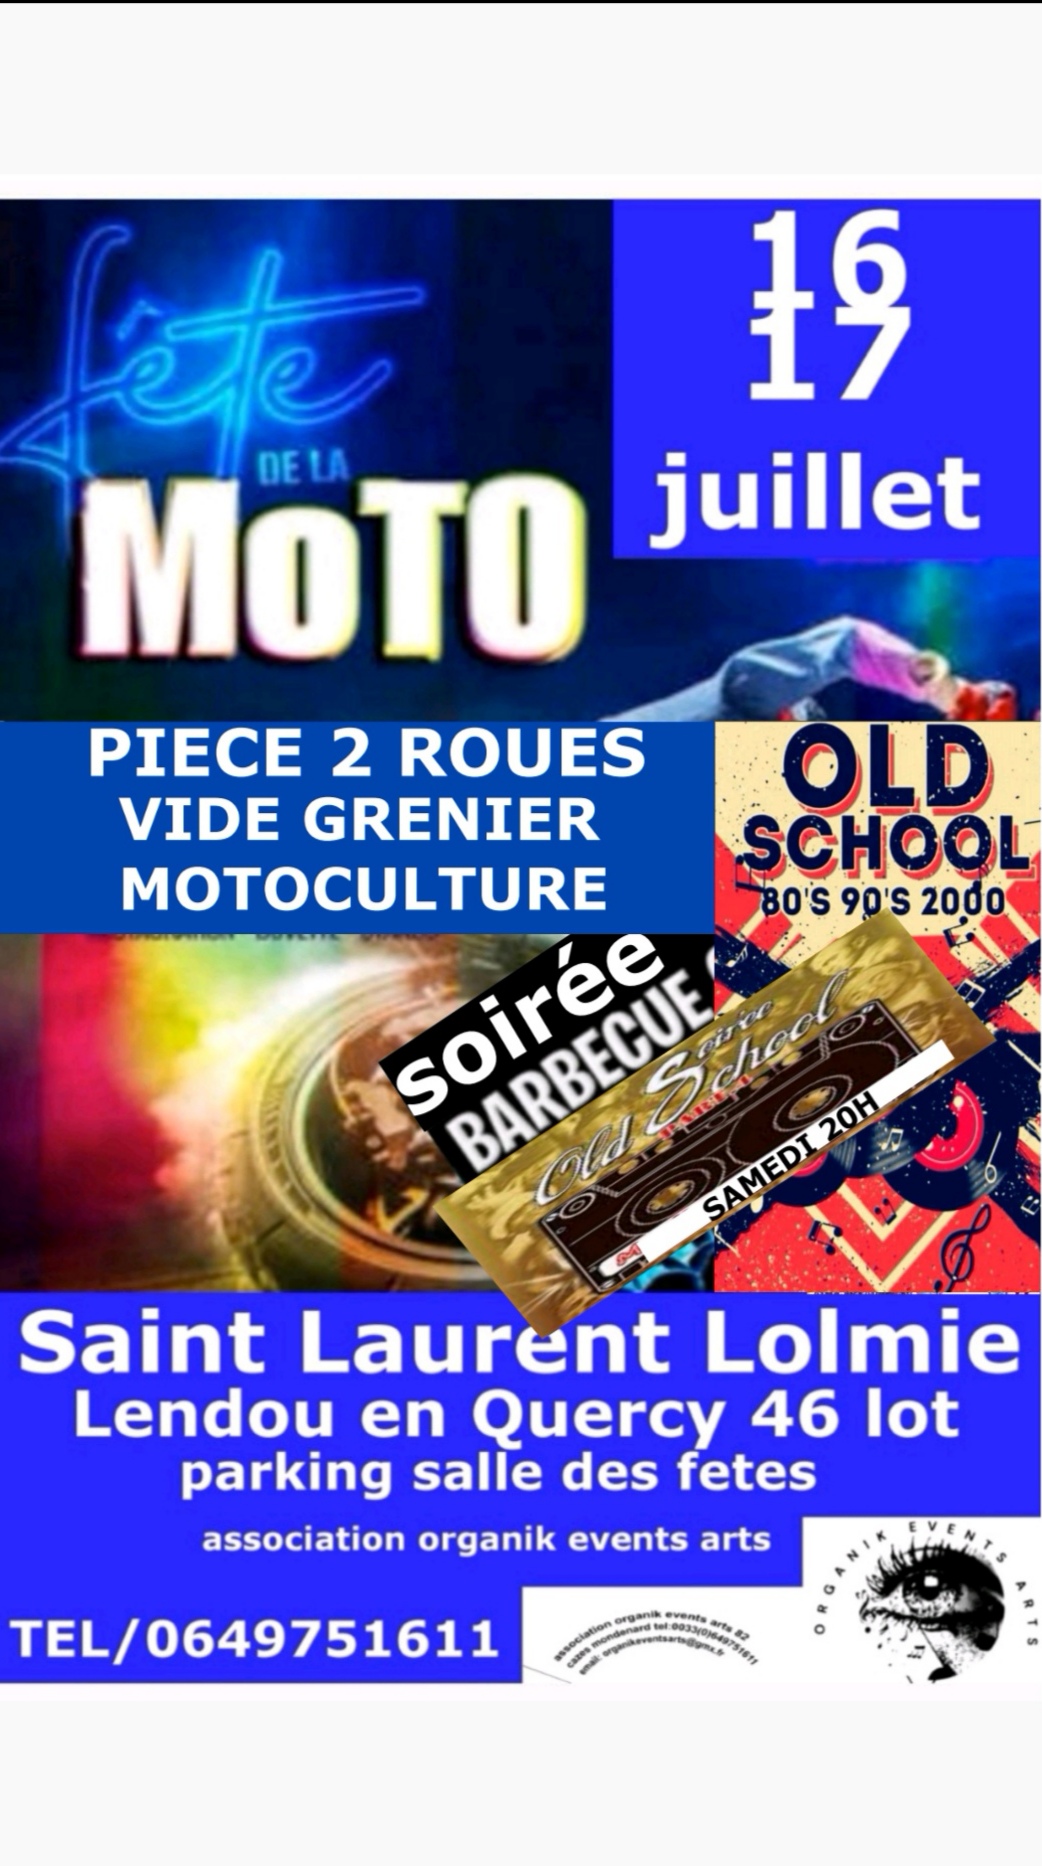 Figeac : Fête de la moto à Saint-Laurent-Lolmie